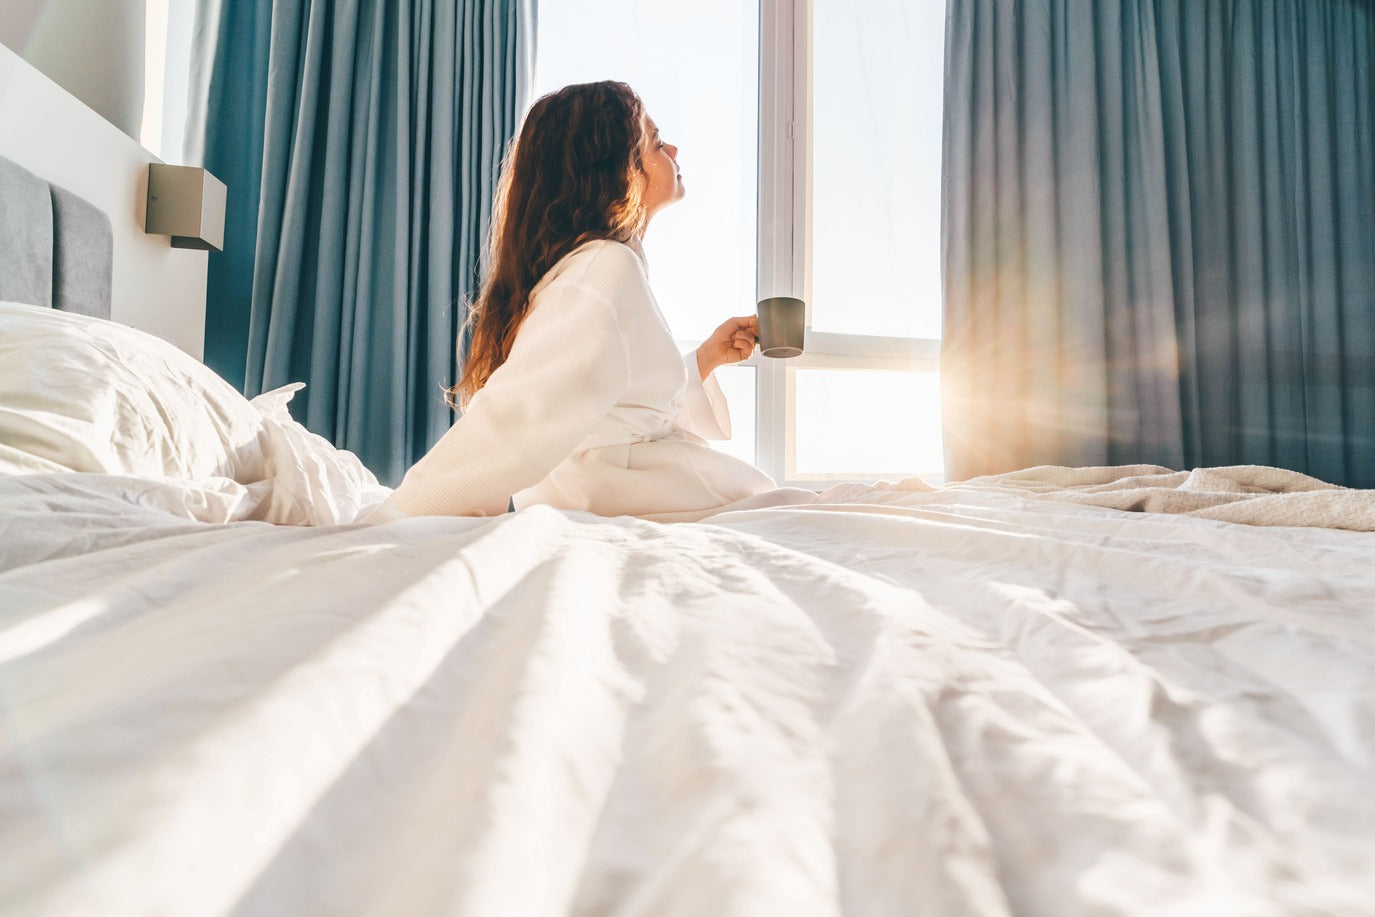 Femme assise dans son lit, tenant une tasse de café, le soleil entrant par la fenêtre.